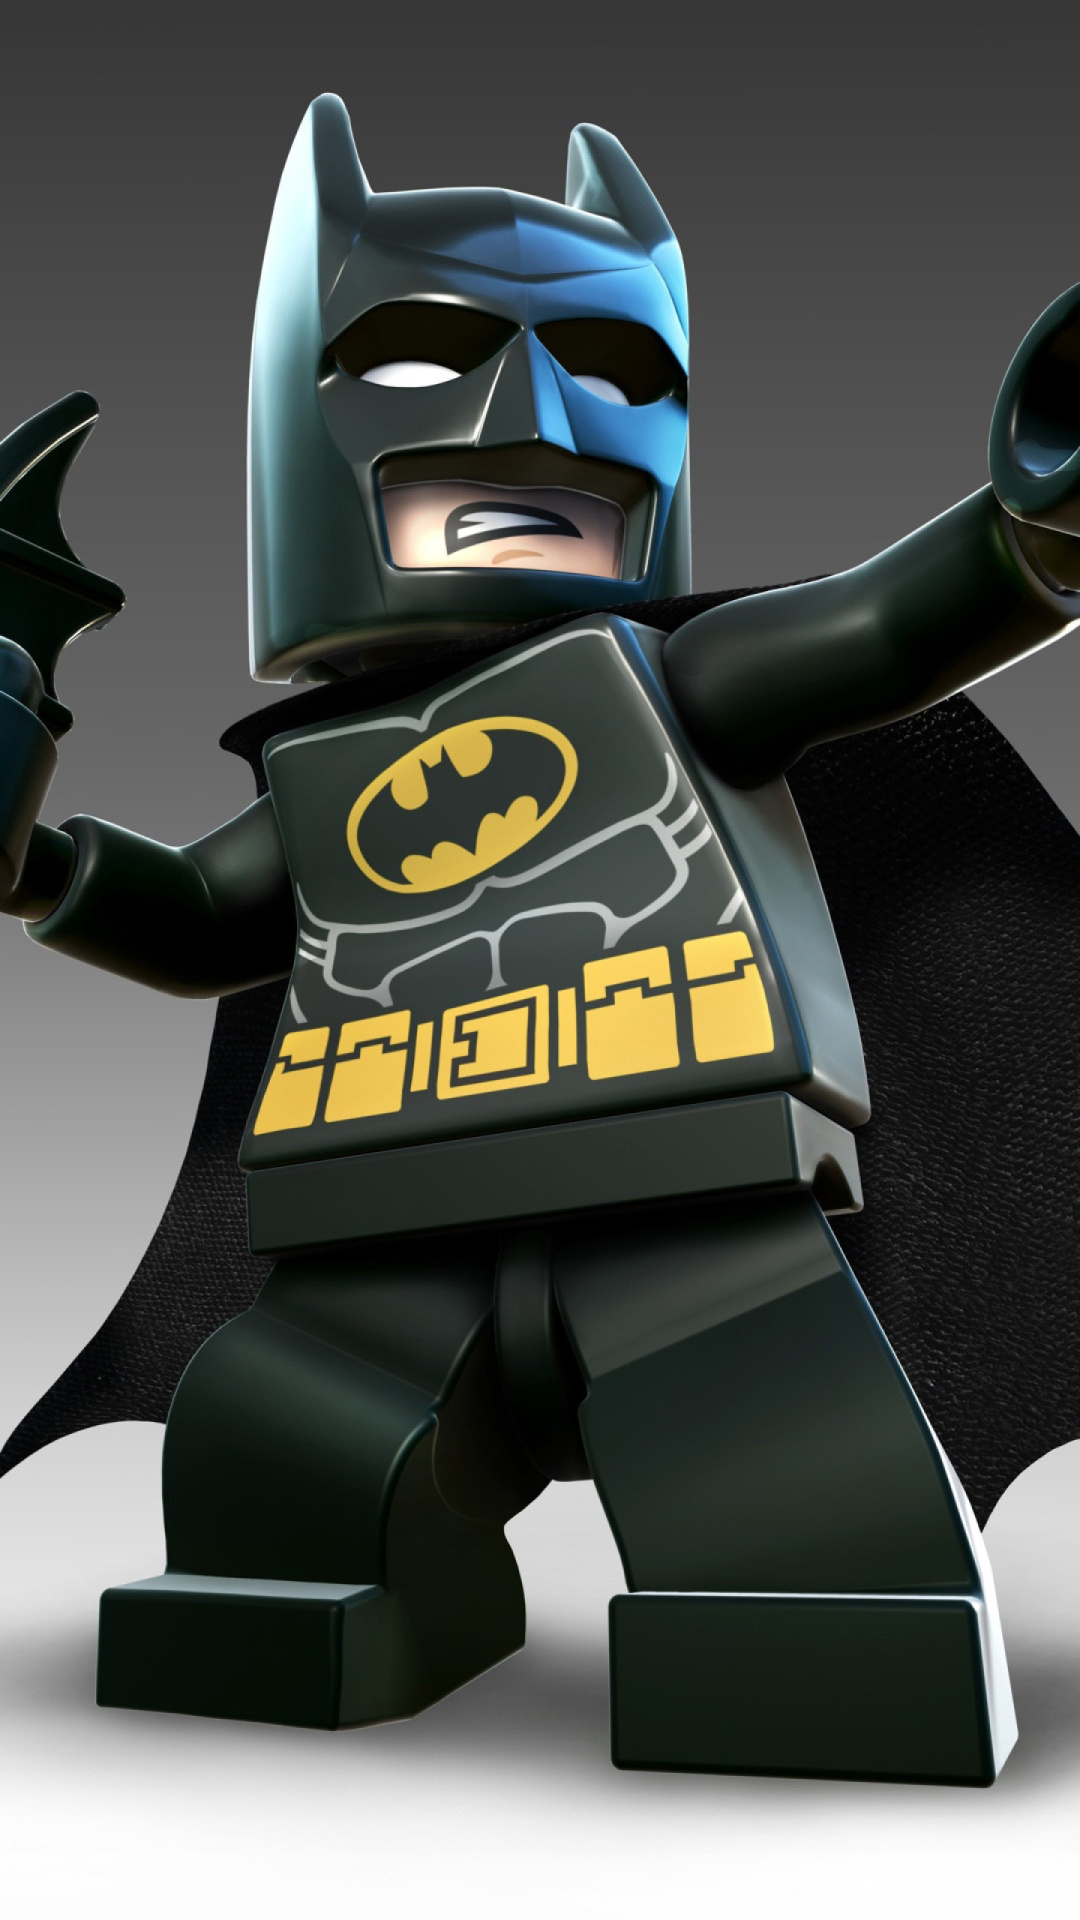 Lego Batman 2 Dc Super Heroes Batman , HD Wallpaper & Backgrounds